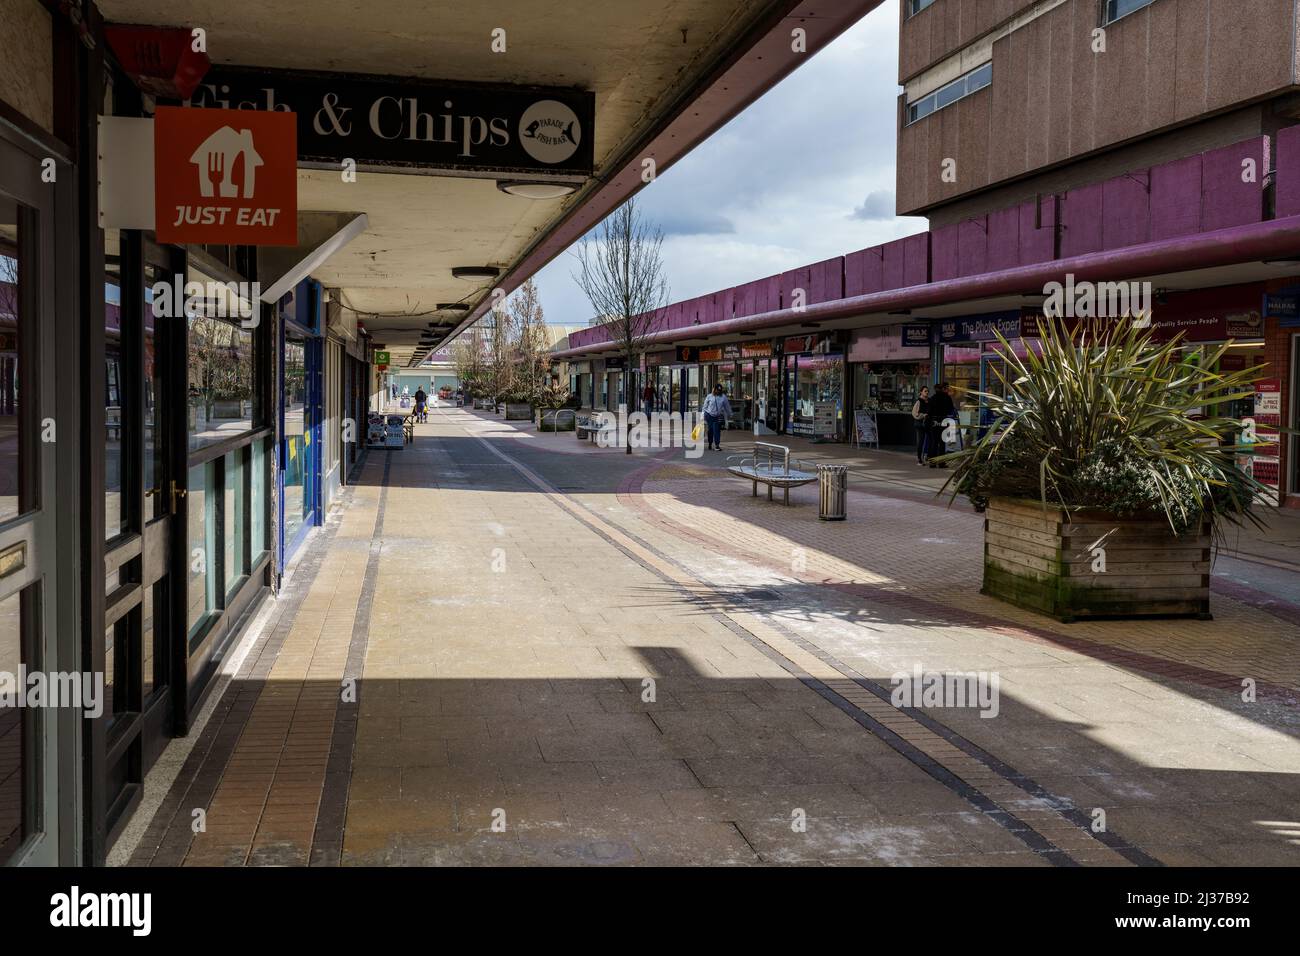 Swinton town centre shopping precinct and shoppers walking through arcade Stock Photo